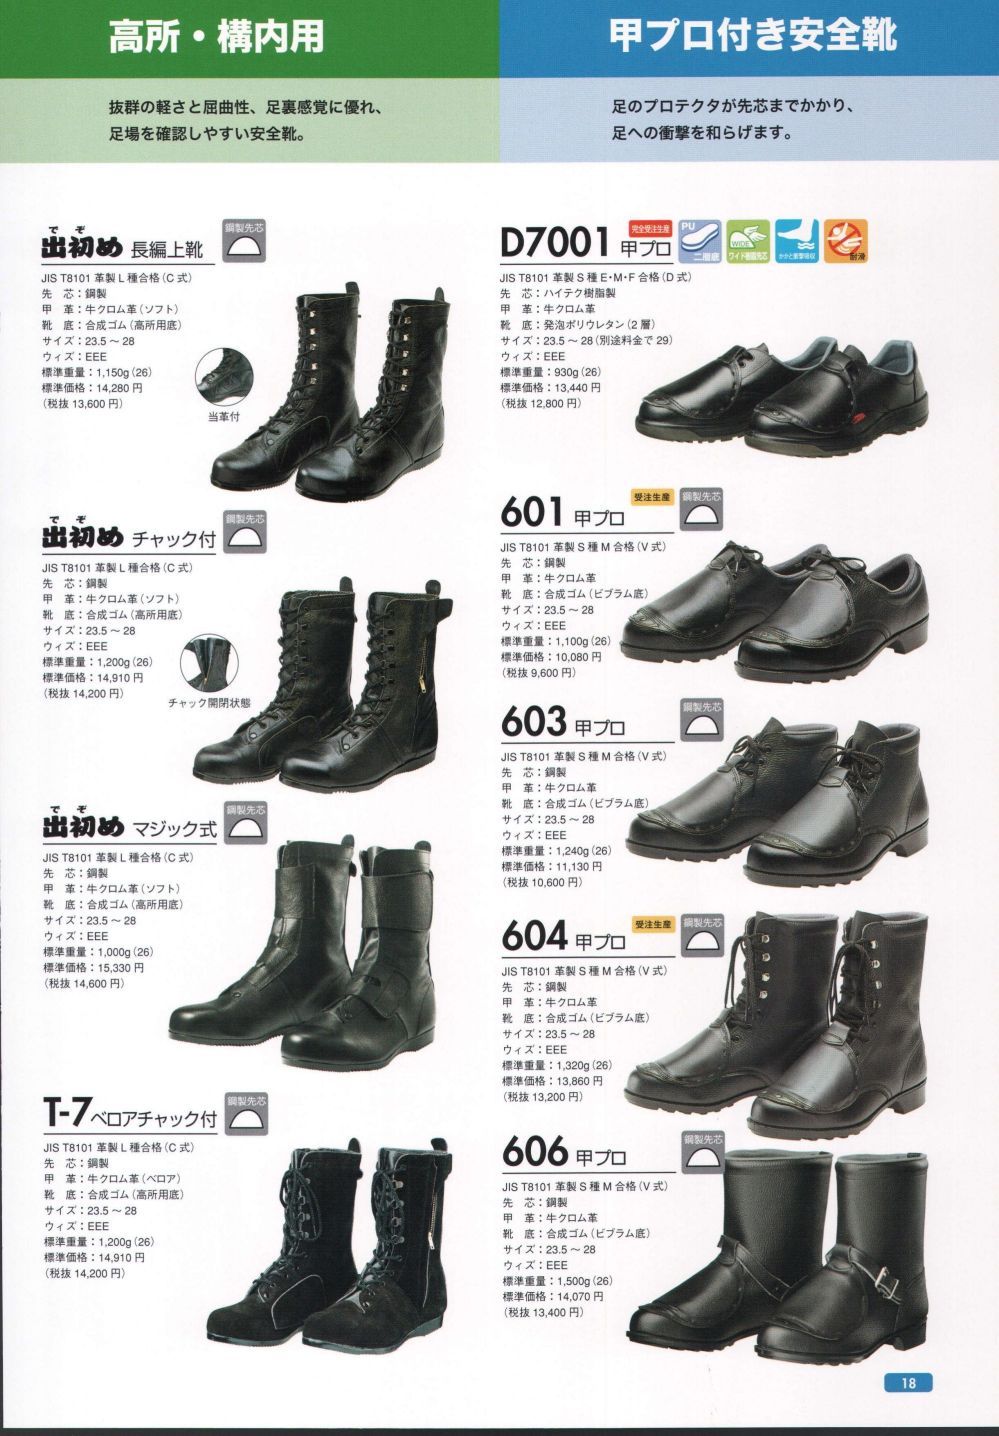 ドンケル:一般作業用安全靴 型式:604-25.0cm-